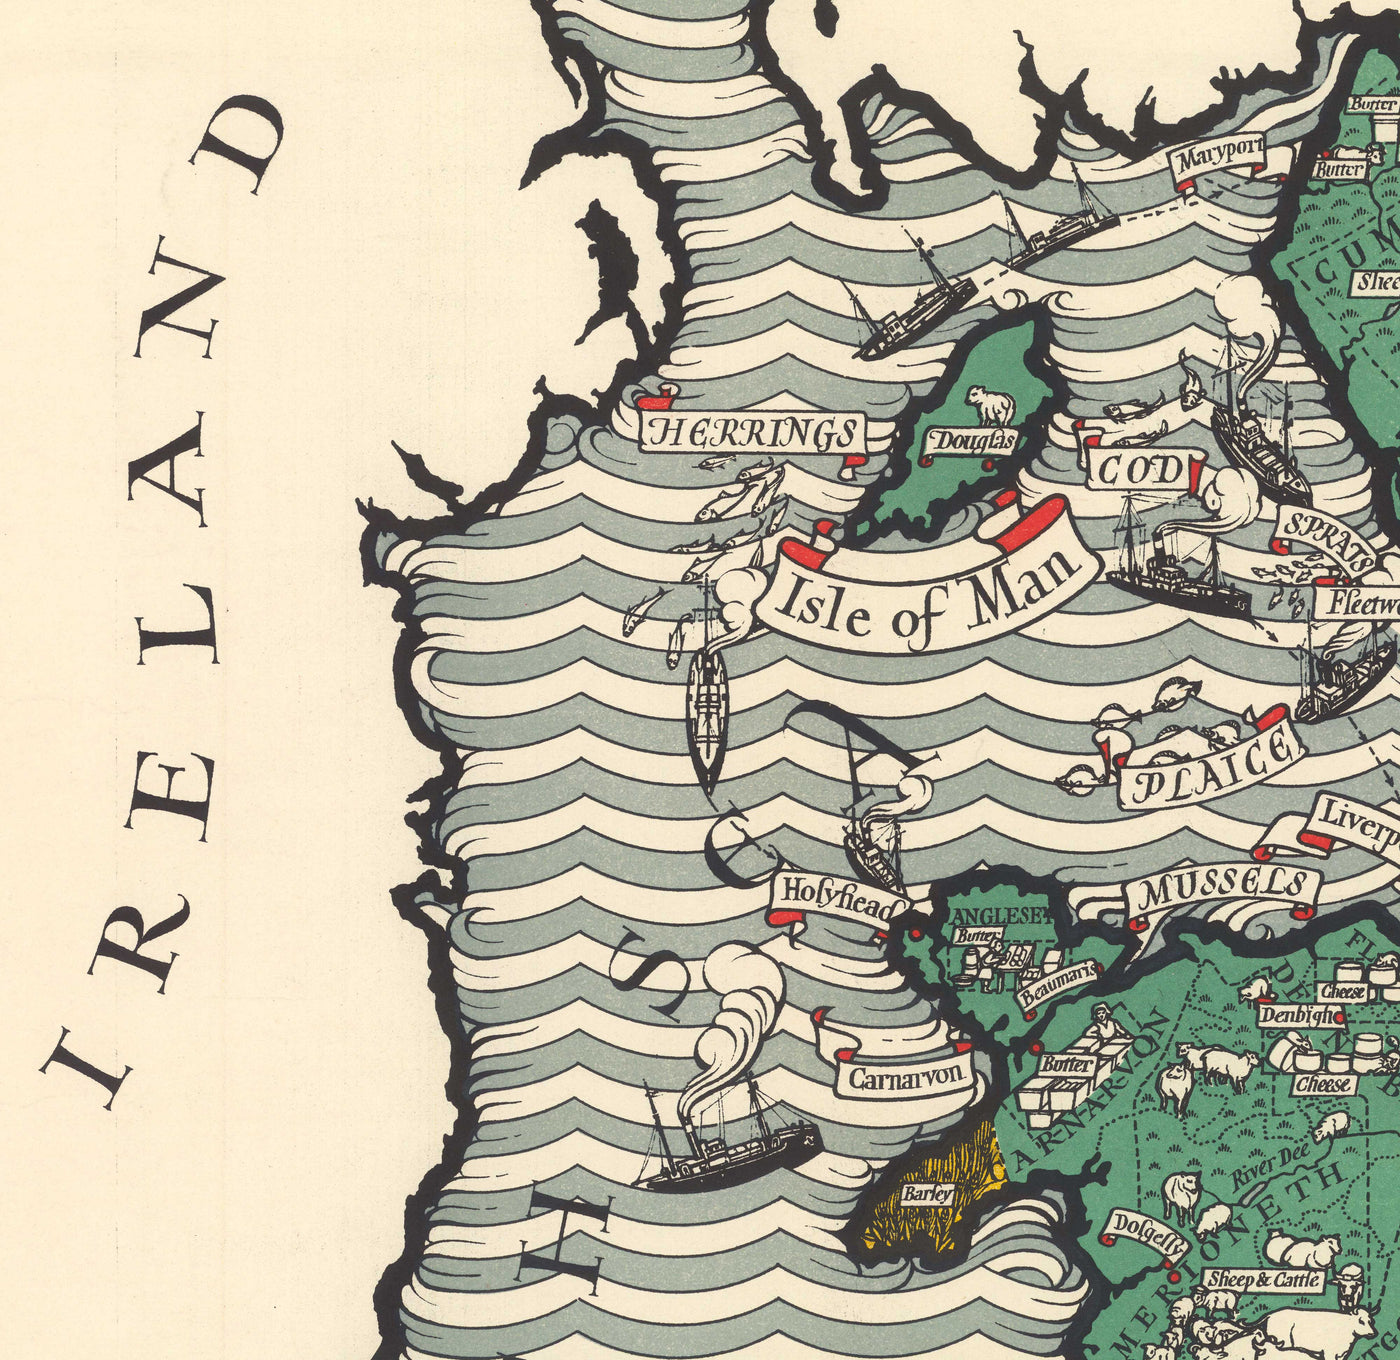 Ancienne carte de l'agriculture et de la pêche en Angleterre et au Pays de Galles par Macdonald Gill - Volaille, produits laitiers, cultures, produits, fermes